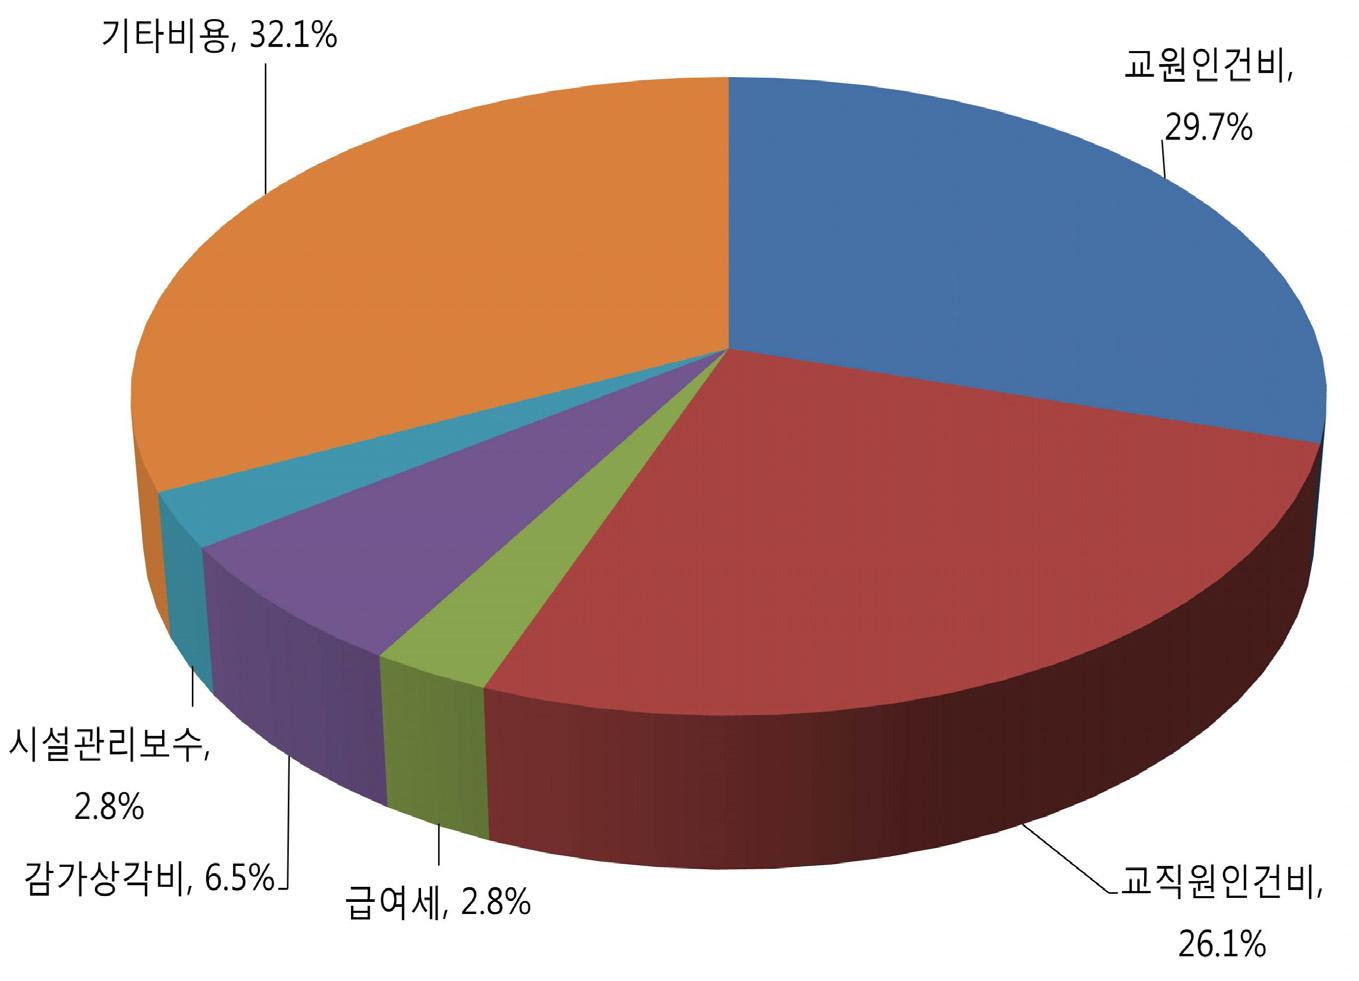 고등교육기관 운영지출 항목별 비율(2012)